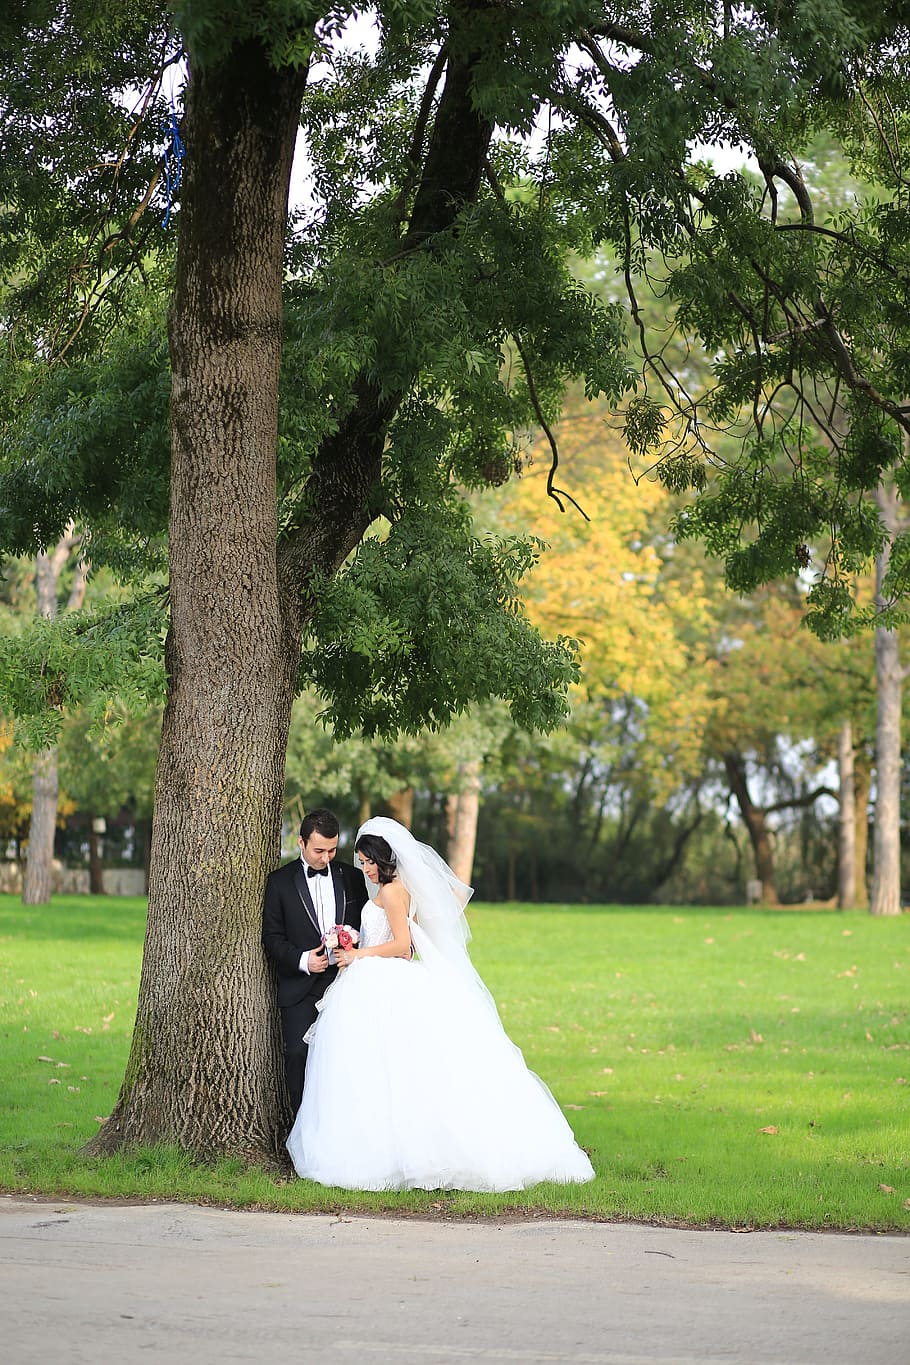 自然, 新しいカップル, 屋外写真, 結婚式の写真, 結婚式, 花嫁, 新婚, 植物, 木, ウェディングドレス